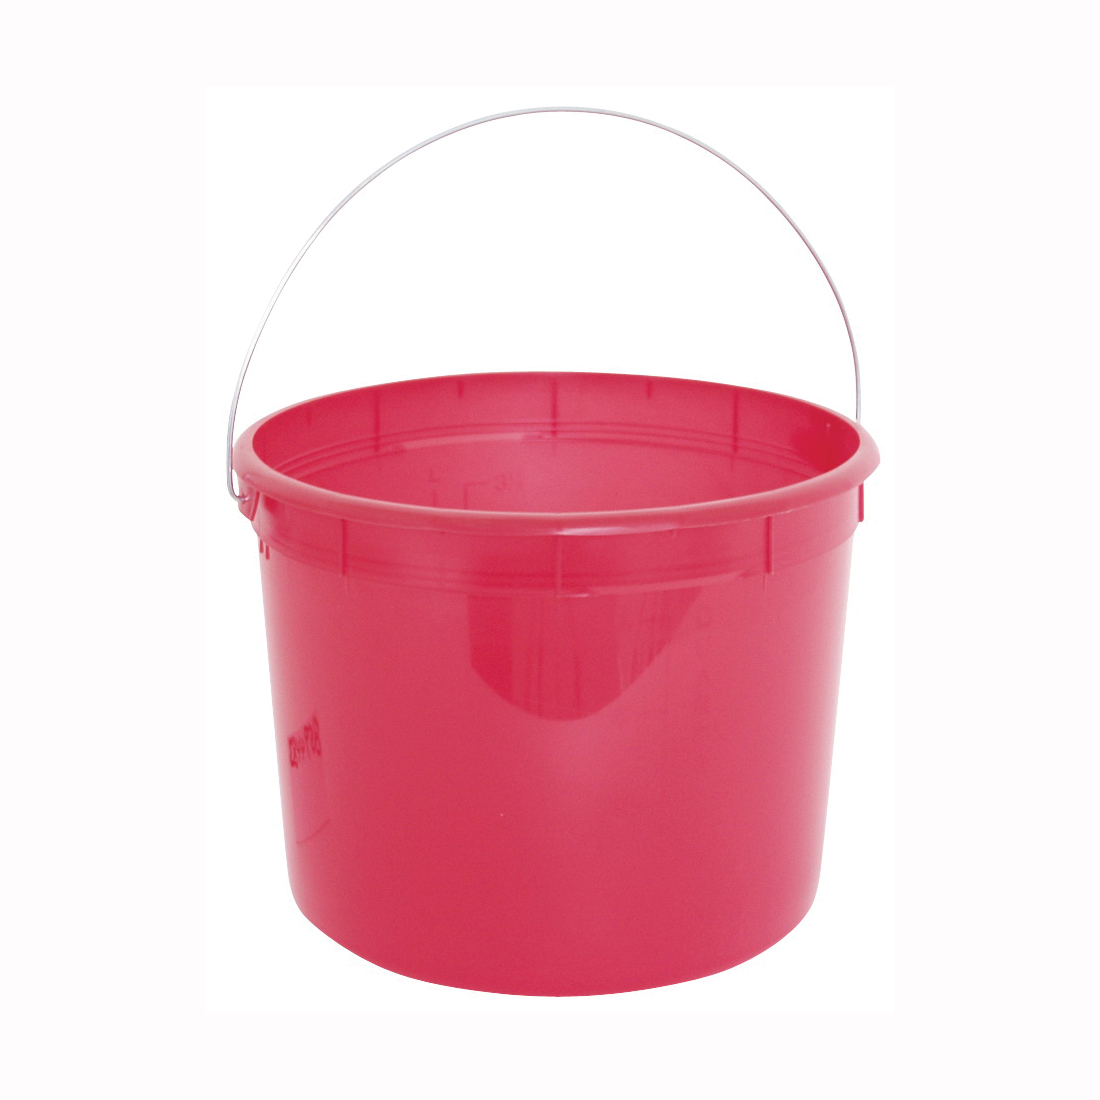 ENCORE Plastics 05160 Paint Pail, 5 qt Capacity, Plastic, Red